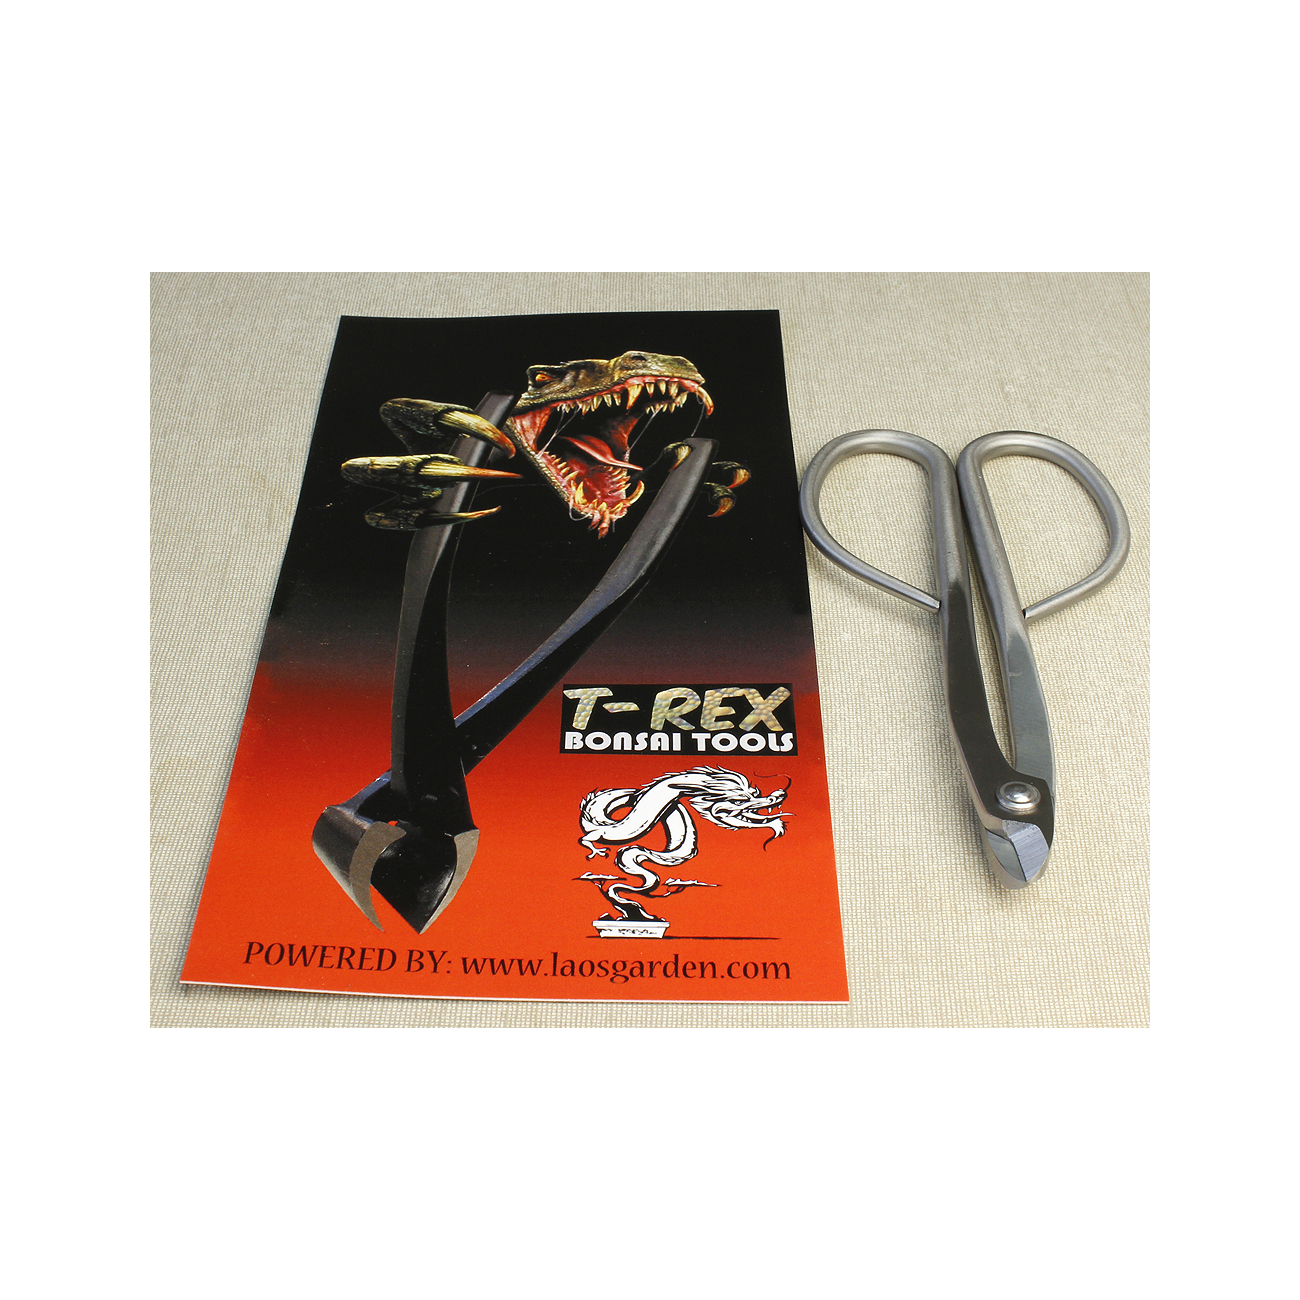 Tijera cortaalambre inox T-Rex 160 mm